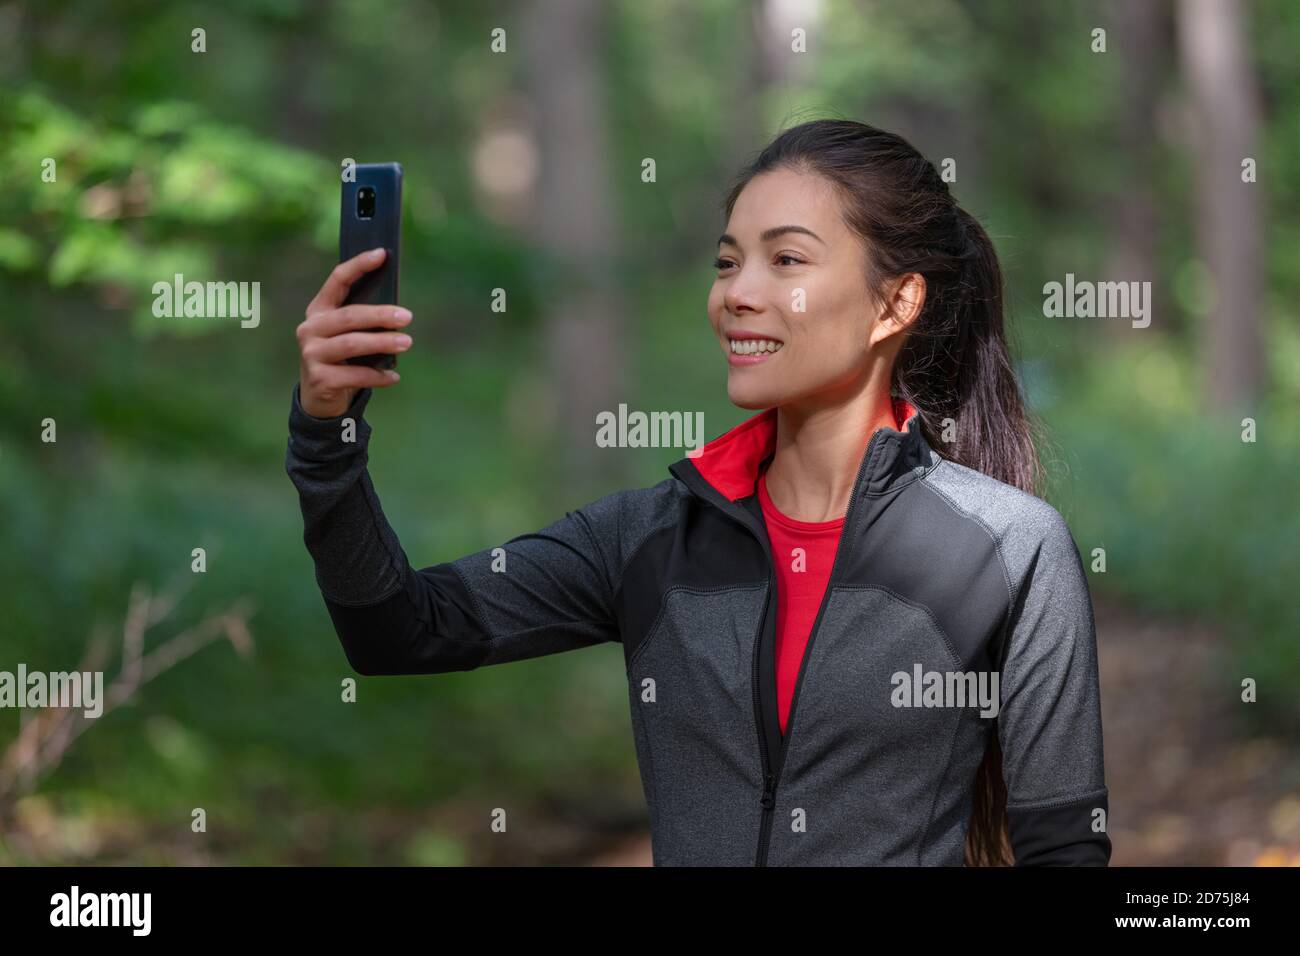 Handy aktive Frau fotografieren mit Handy draußen auf Wald Natur Spaziergang während Cardio-Aktivität halten Smartphone Stockfoto